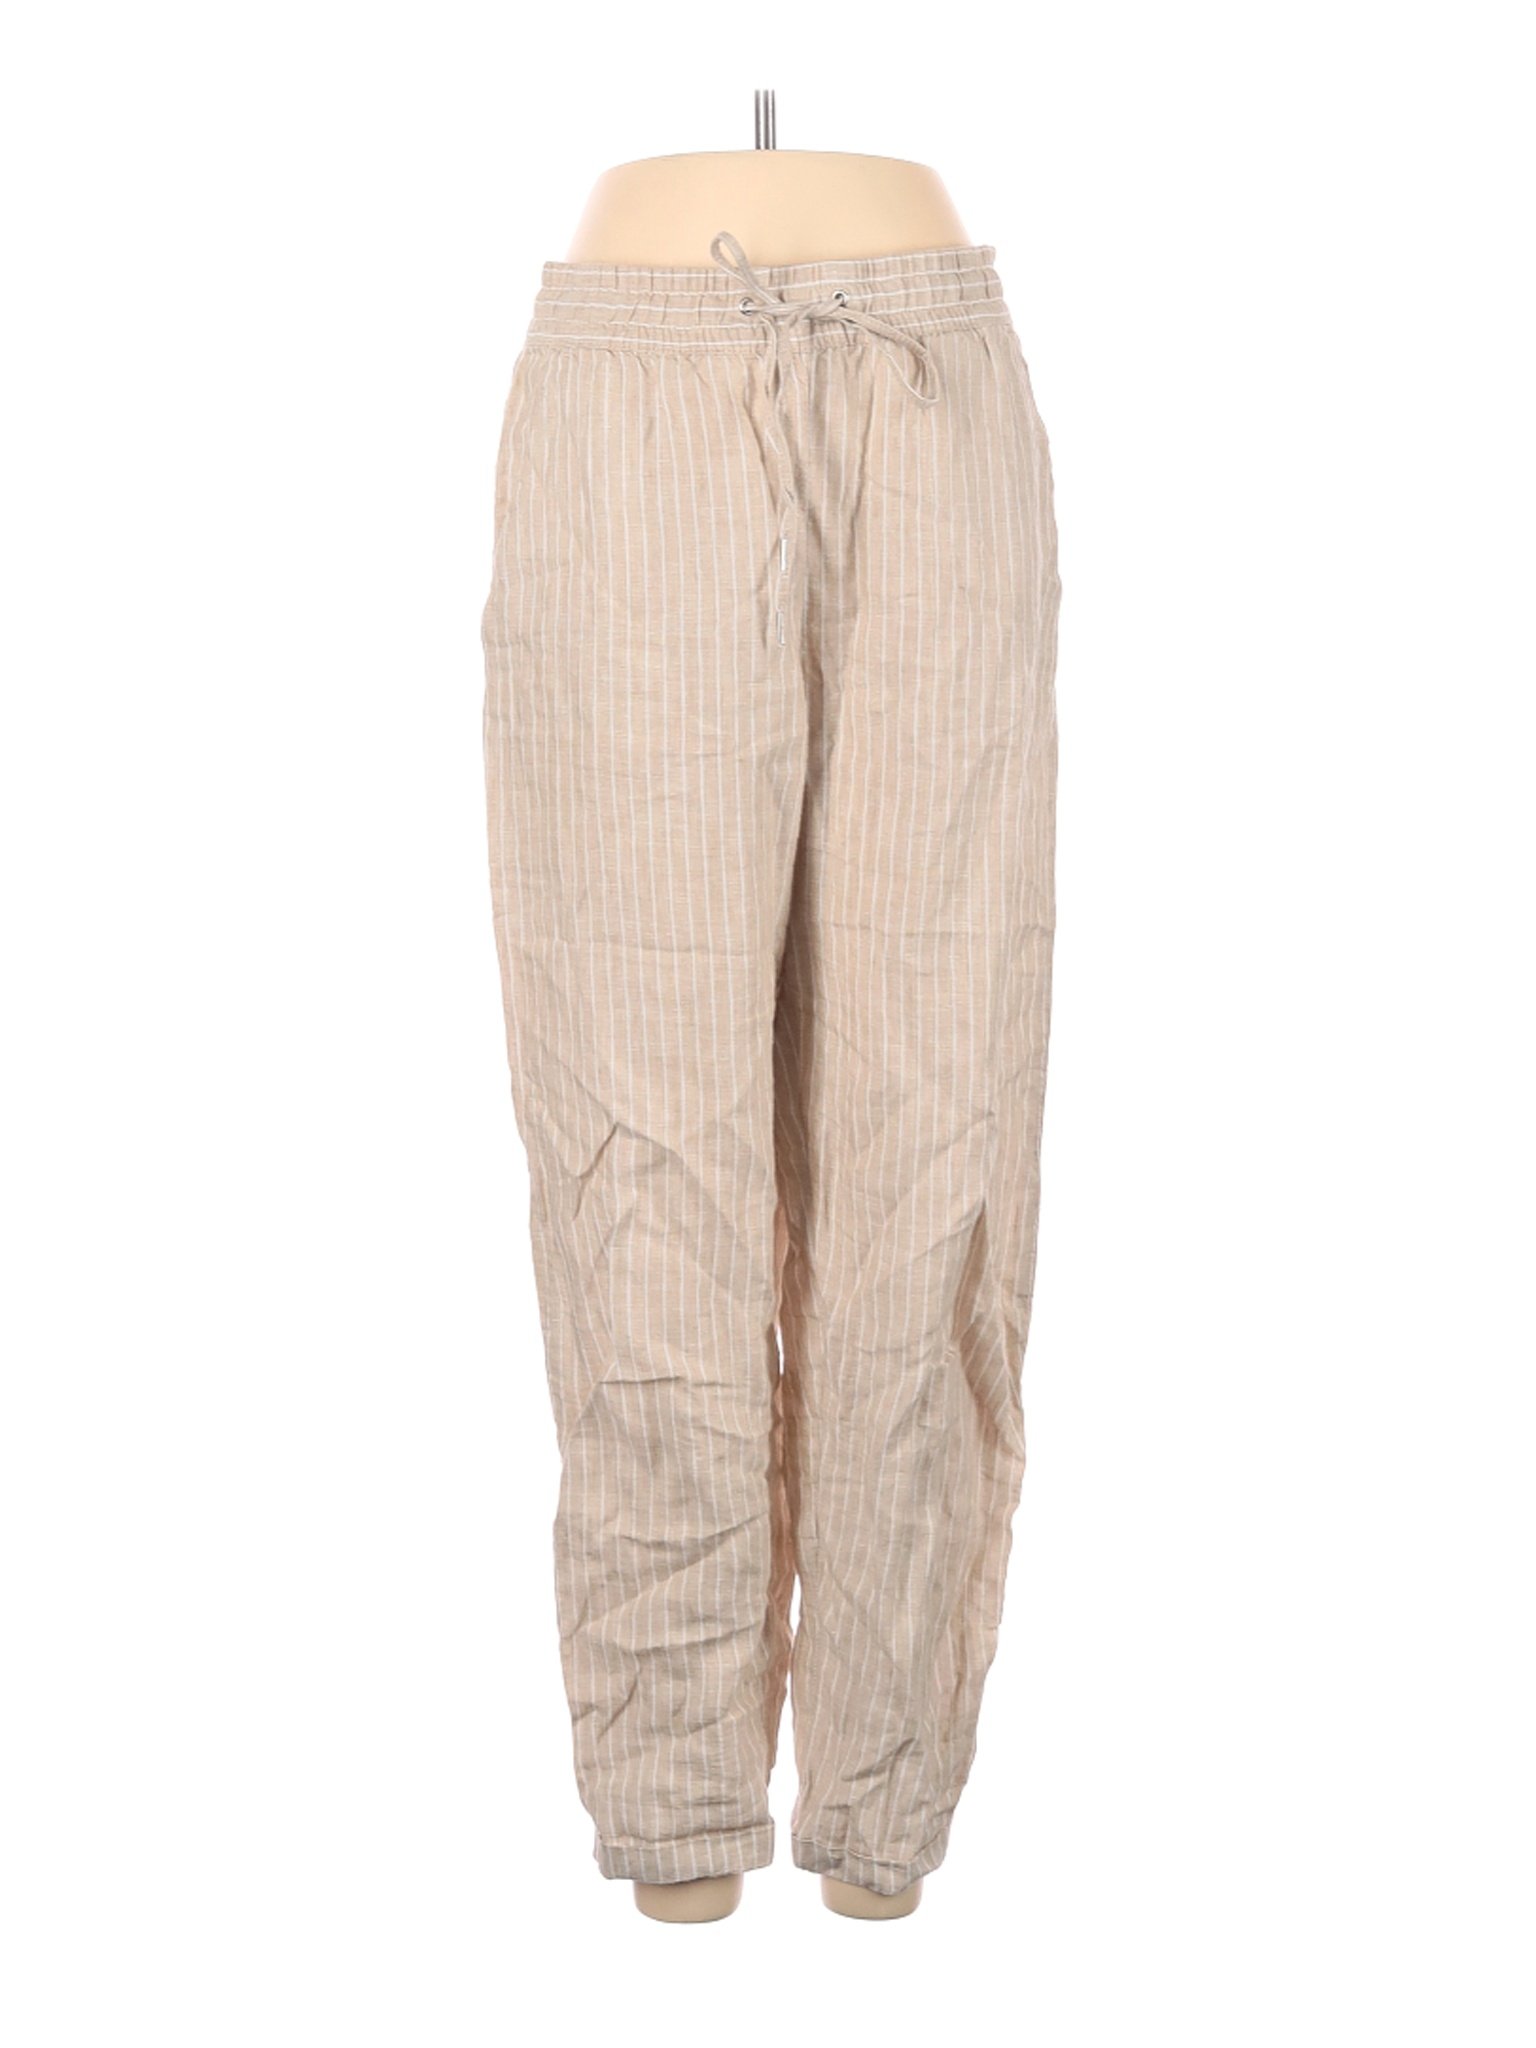 H&M L.O.G.G. Women Brown Linen Pants 4 | eBay